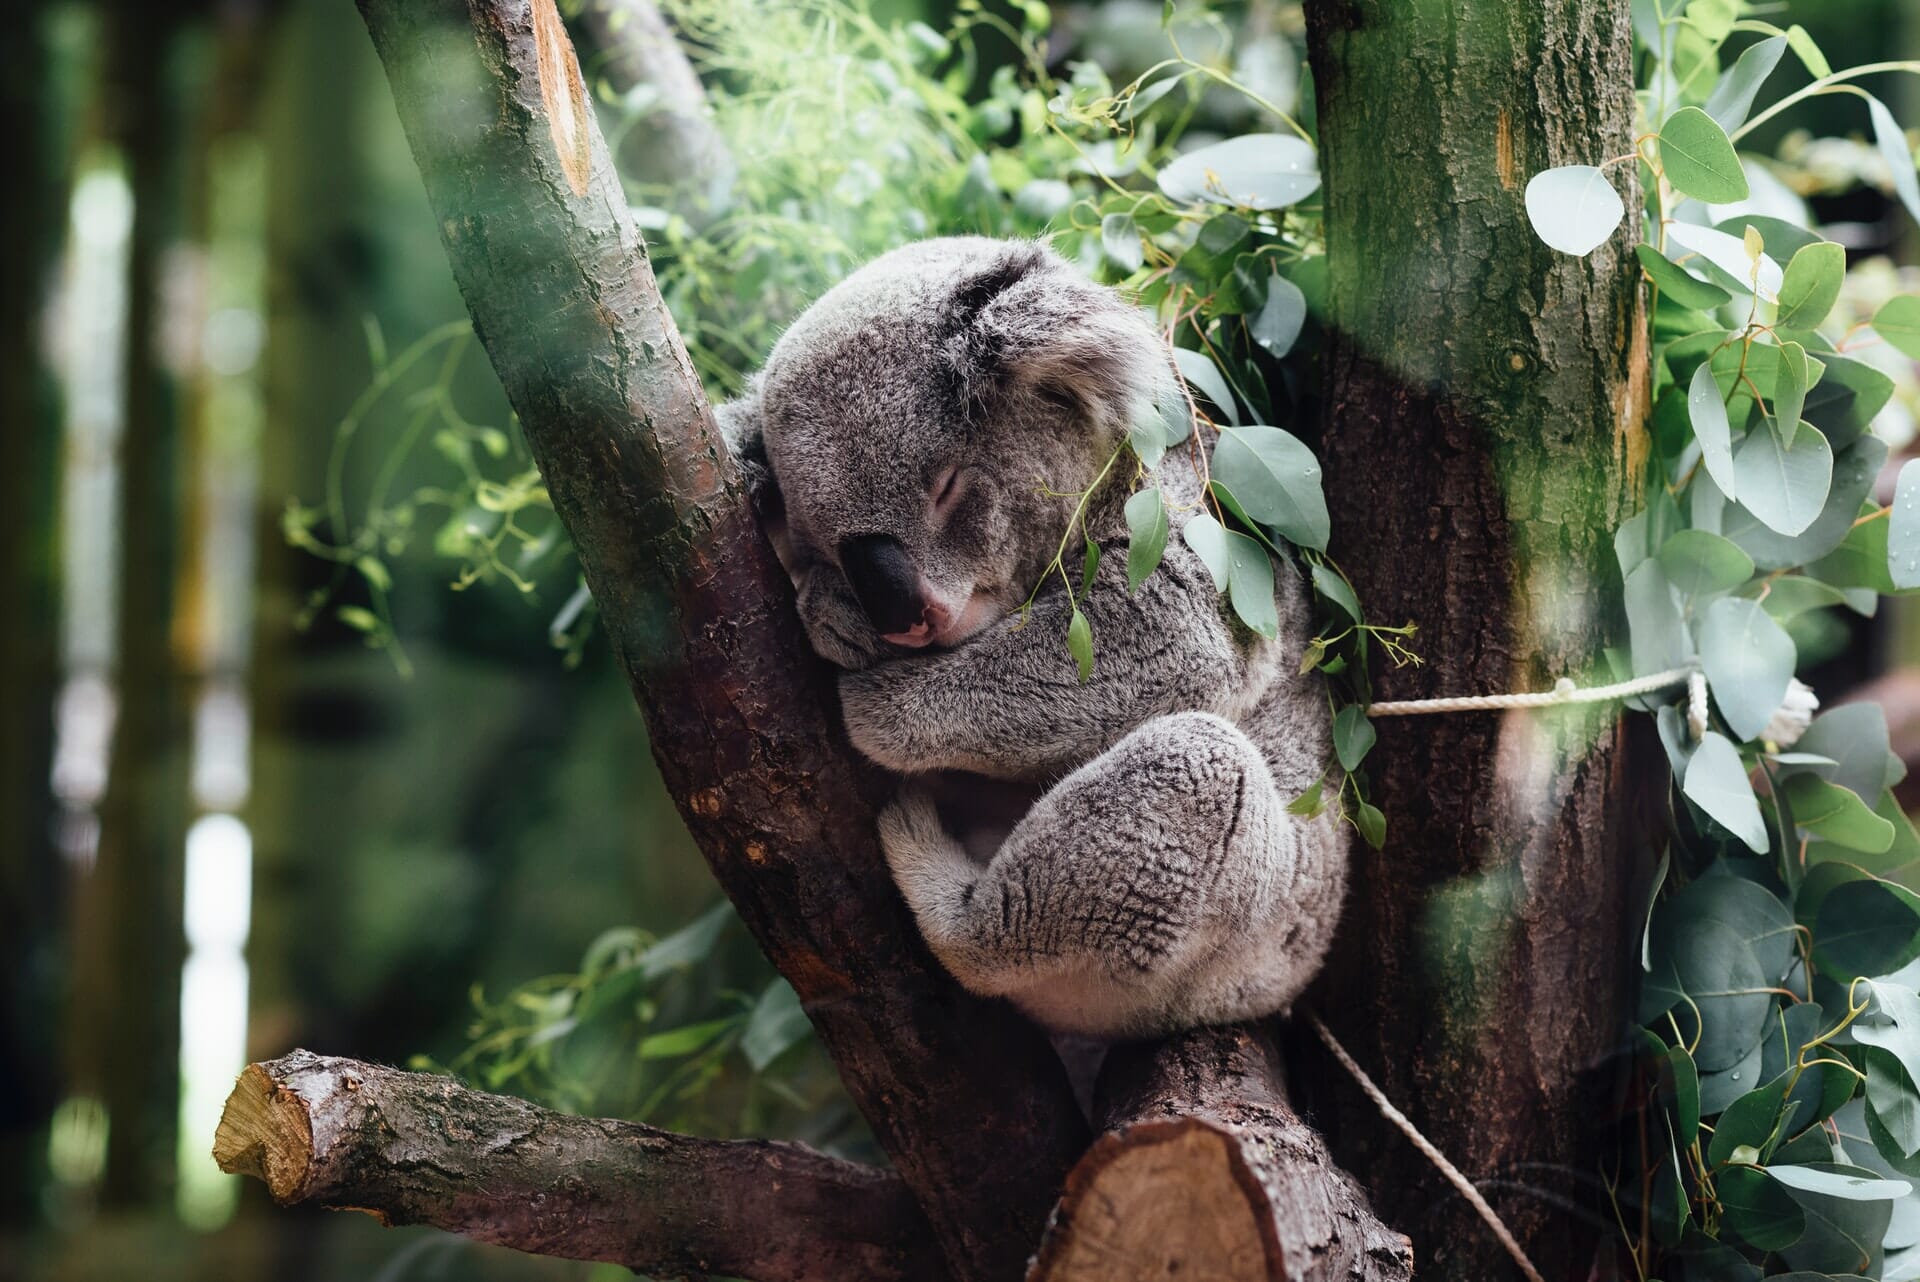 Koala sleeps in a tree